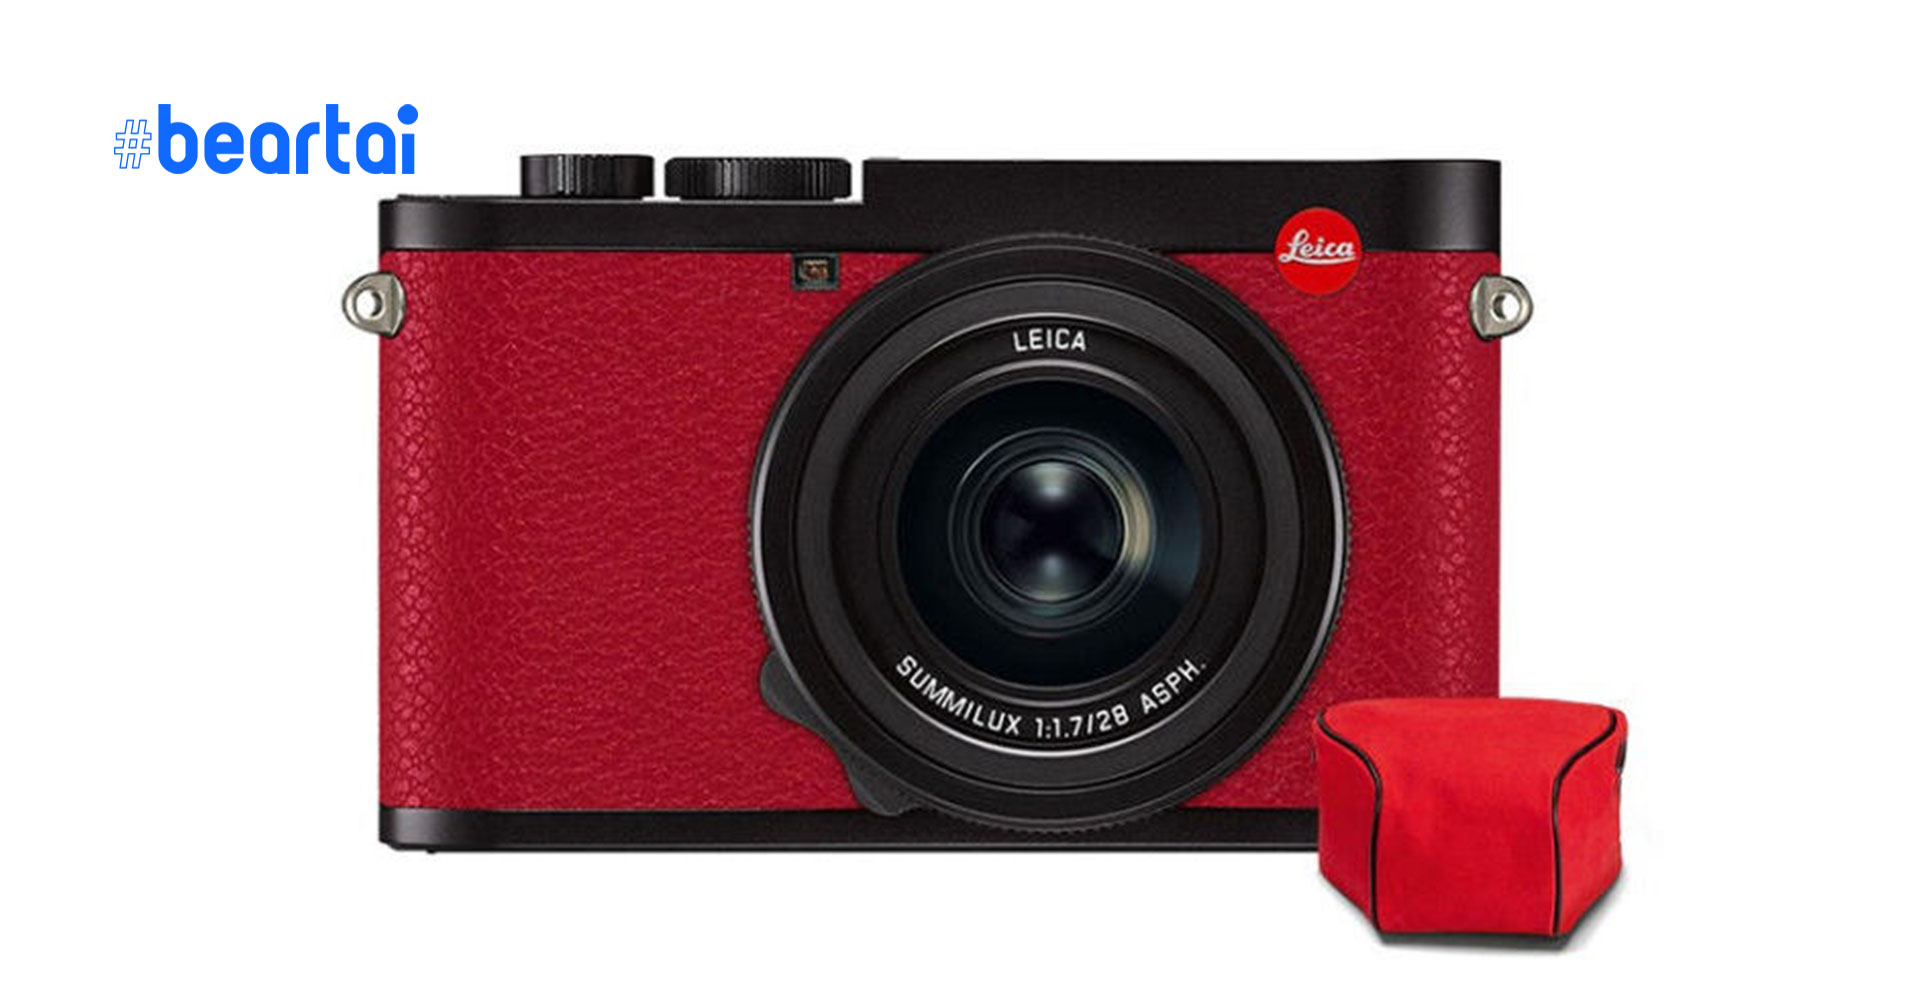 เปิดตัว Leica Q2 red special edition ฉลองวันคนโสดจีน